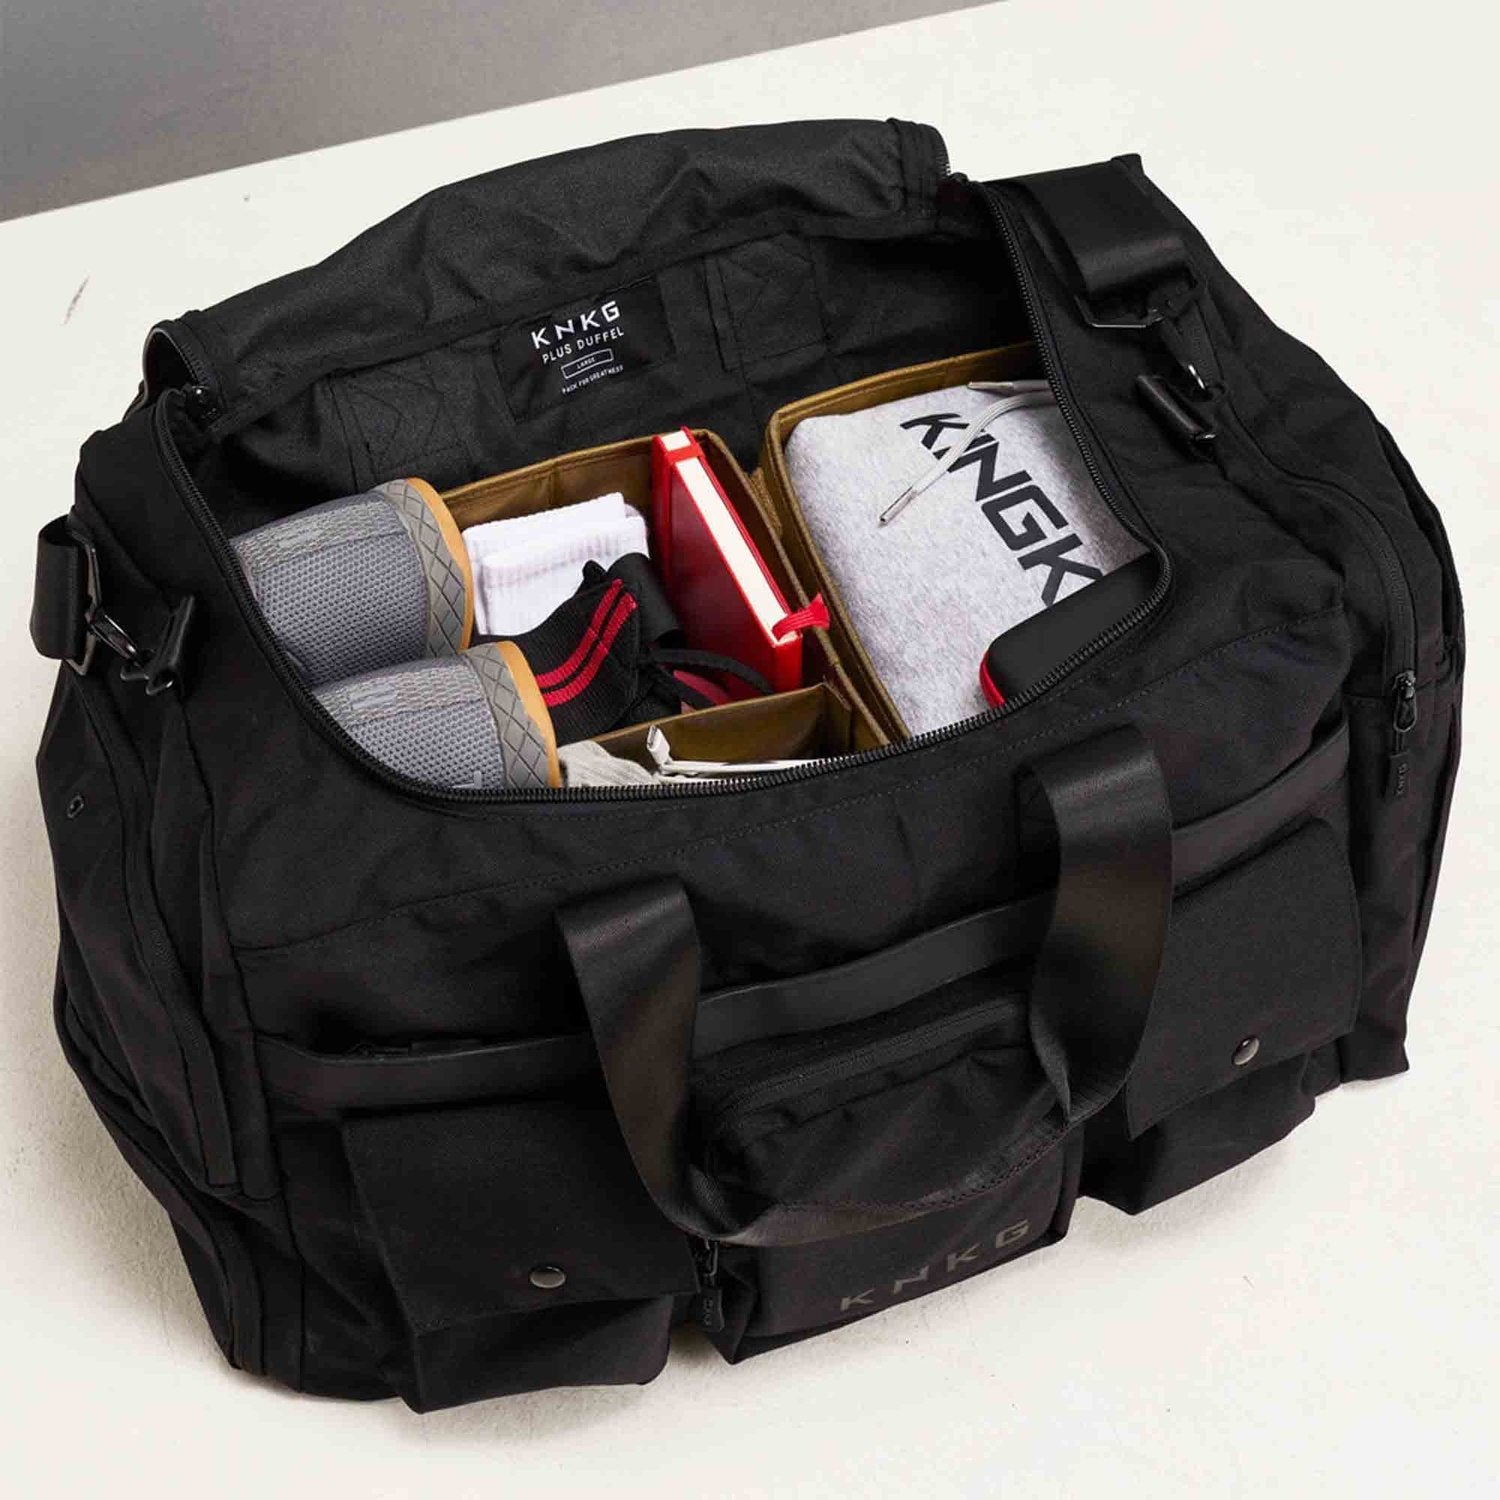 King Kong Bags King Kong Duffle Divider (Sporttaschen-Organiser) kaufen bei HighPowered.ch